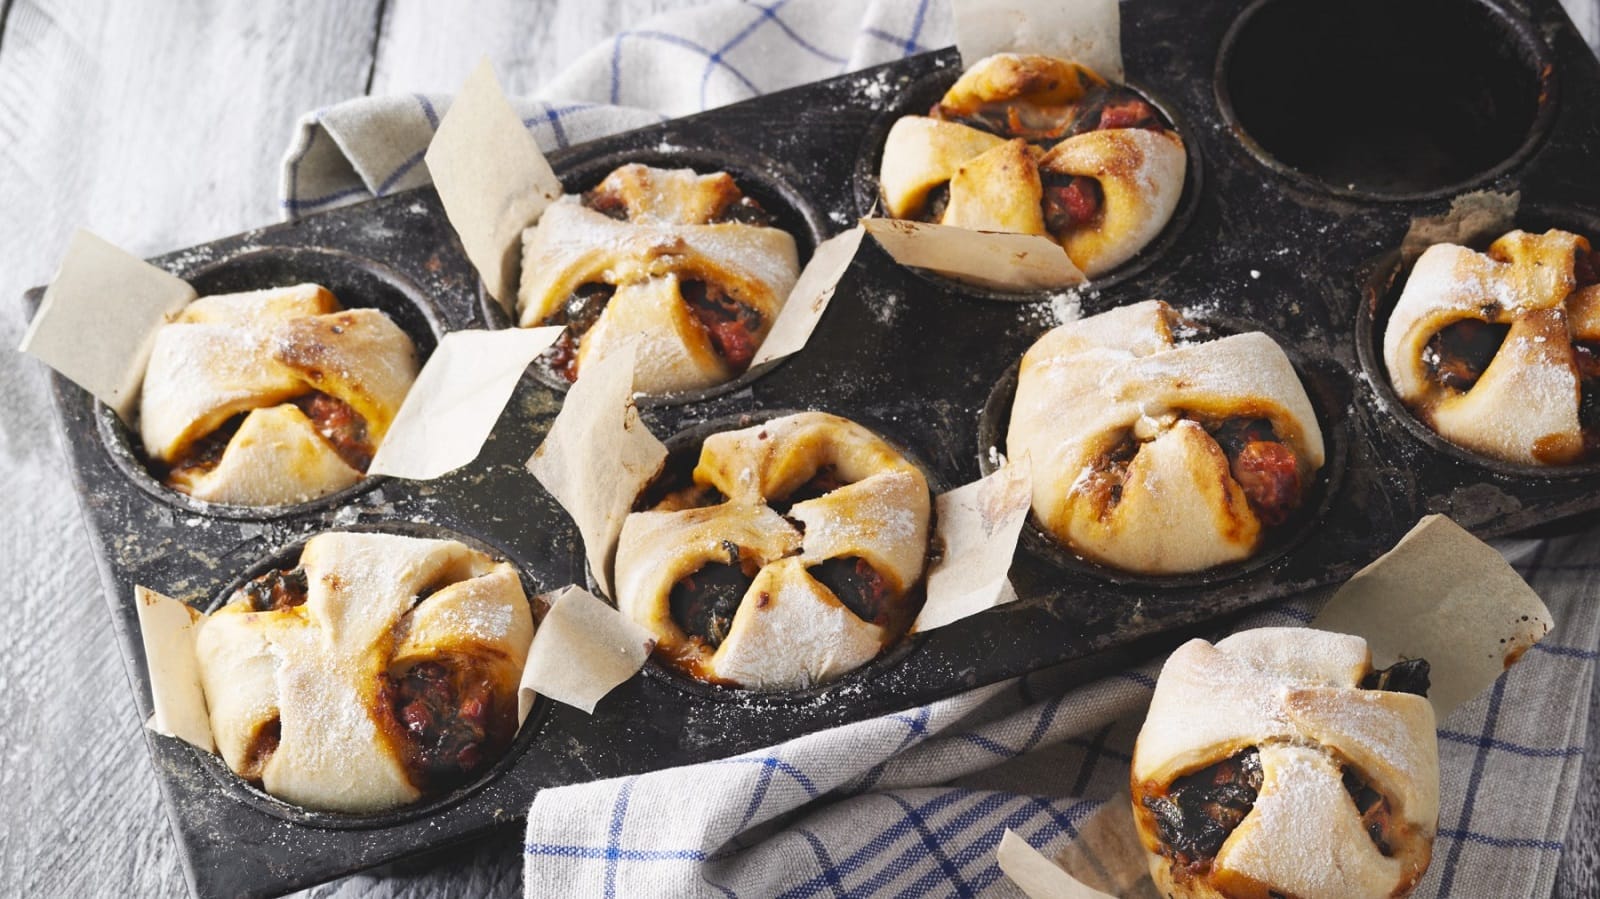 In Muffinformen sind Pizza-Muffins mit Blattspinat und Speck gebacken. Man erkennt die Spinat Füllung.